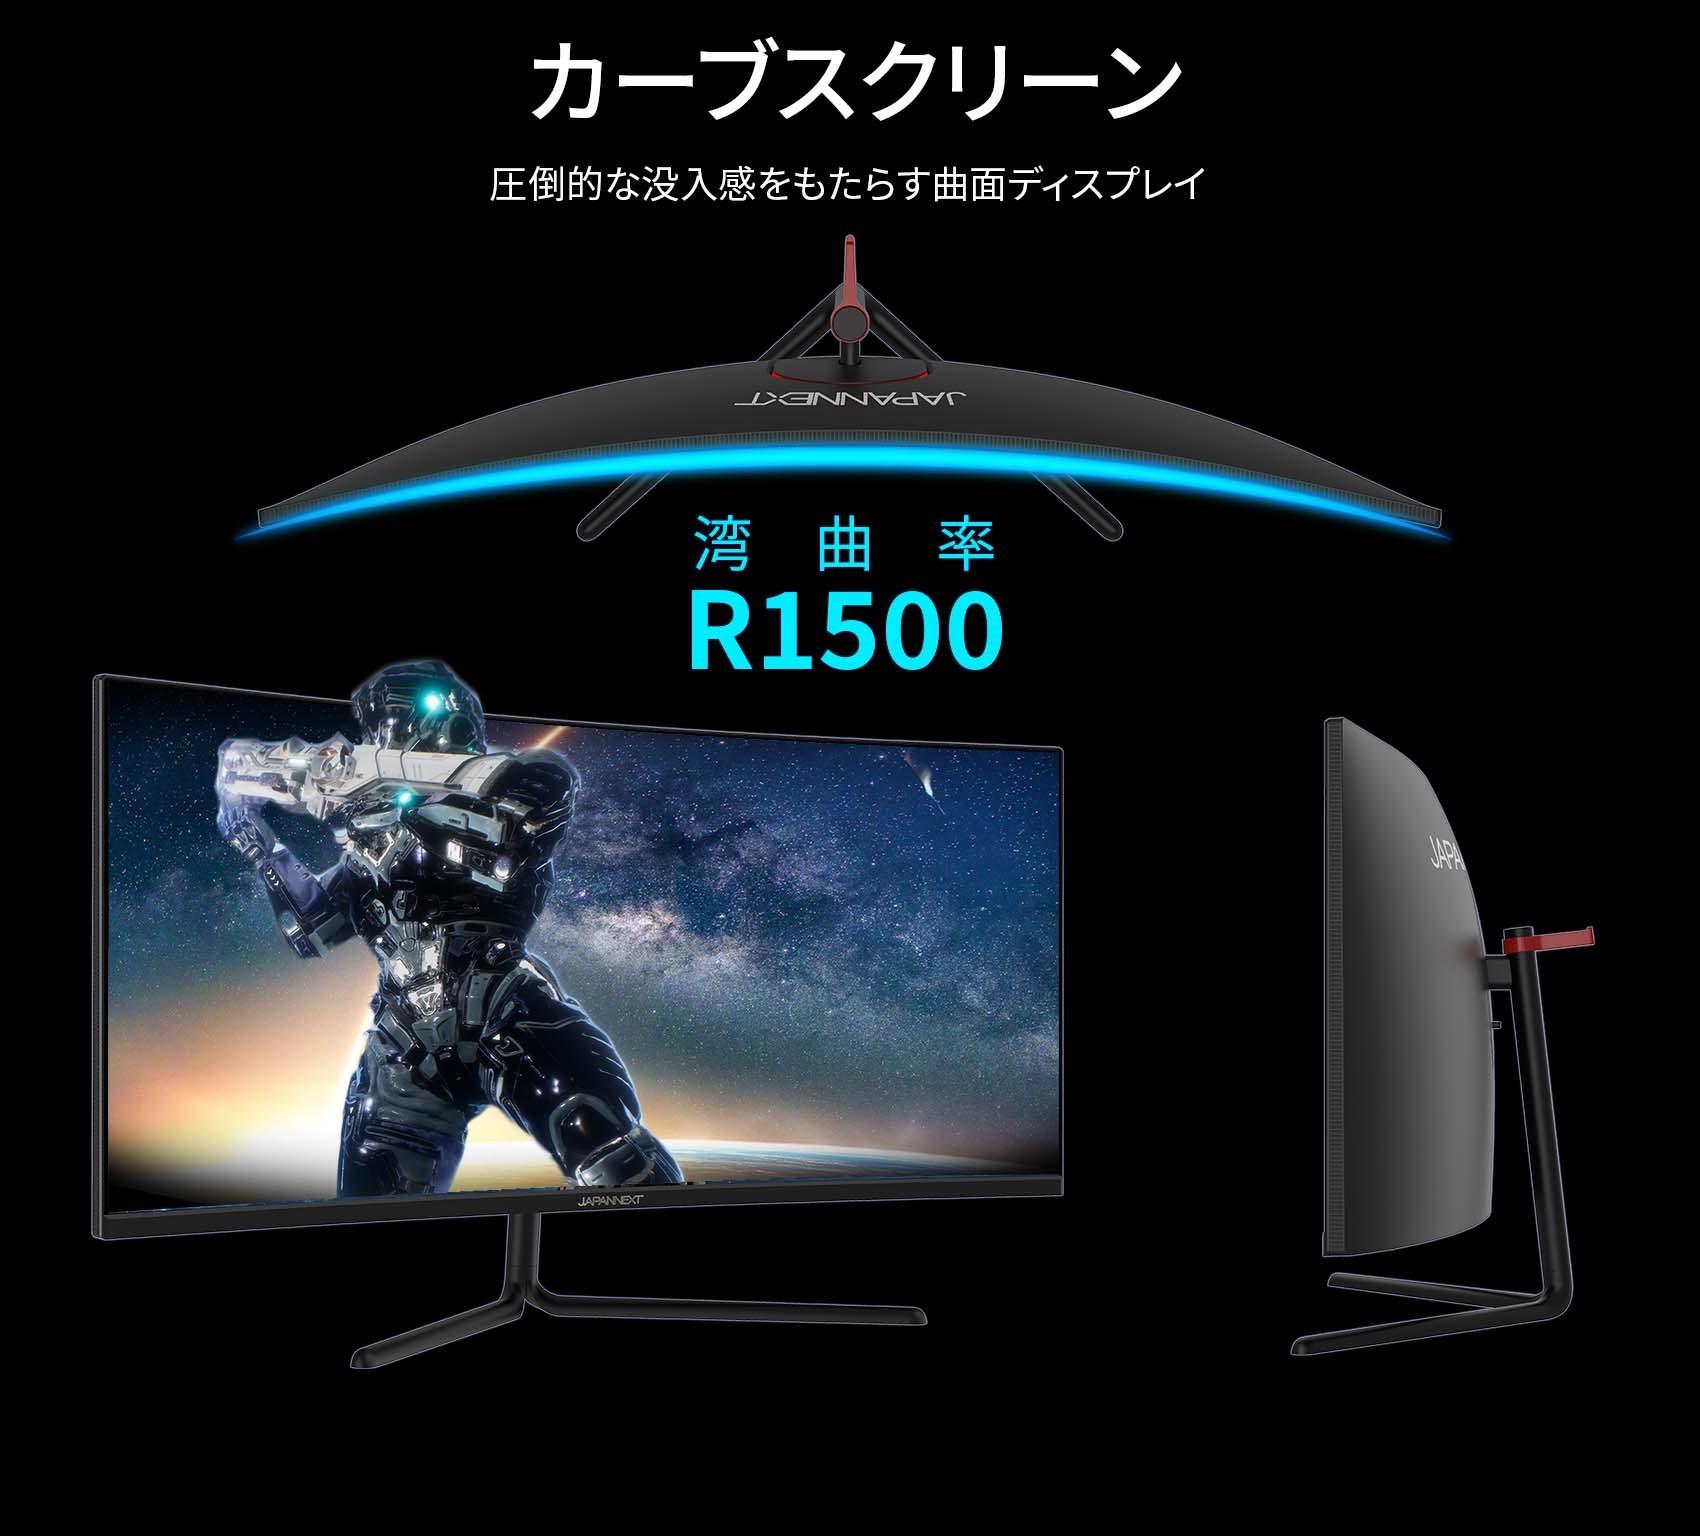 ショッピング取扱店 商品名：JAPANNEXT 湾曲ゲーミングモニター34型 テレビ